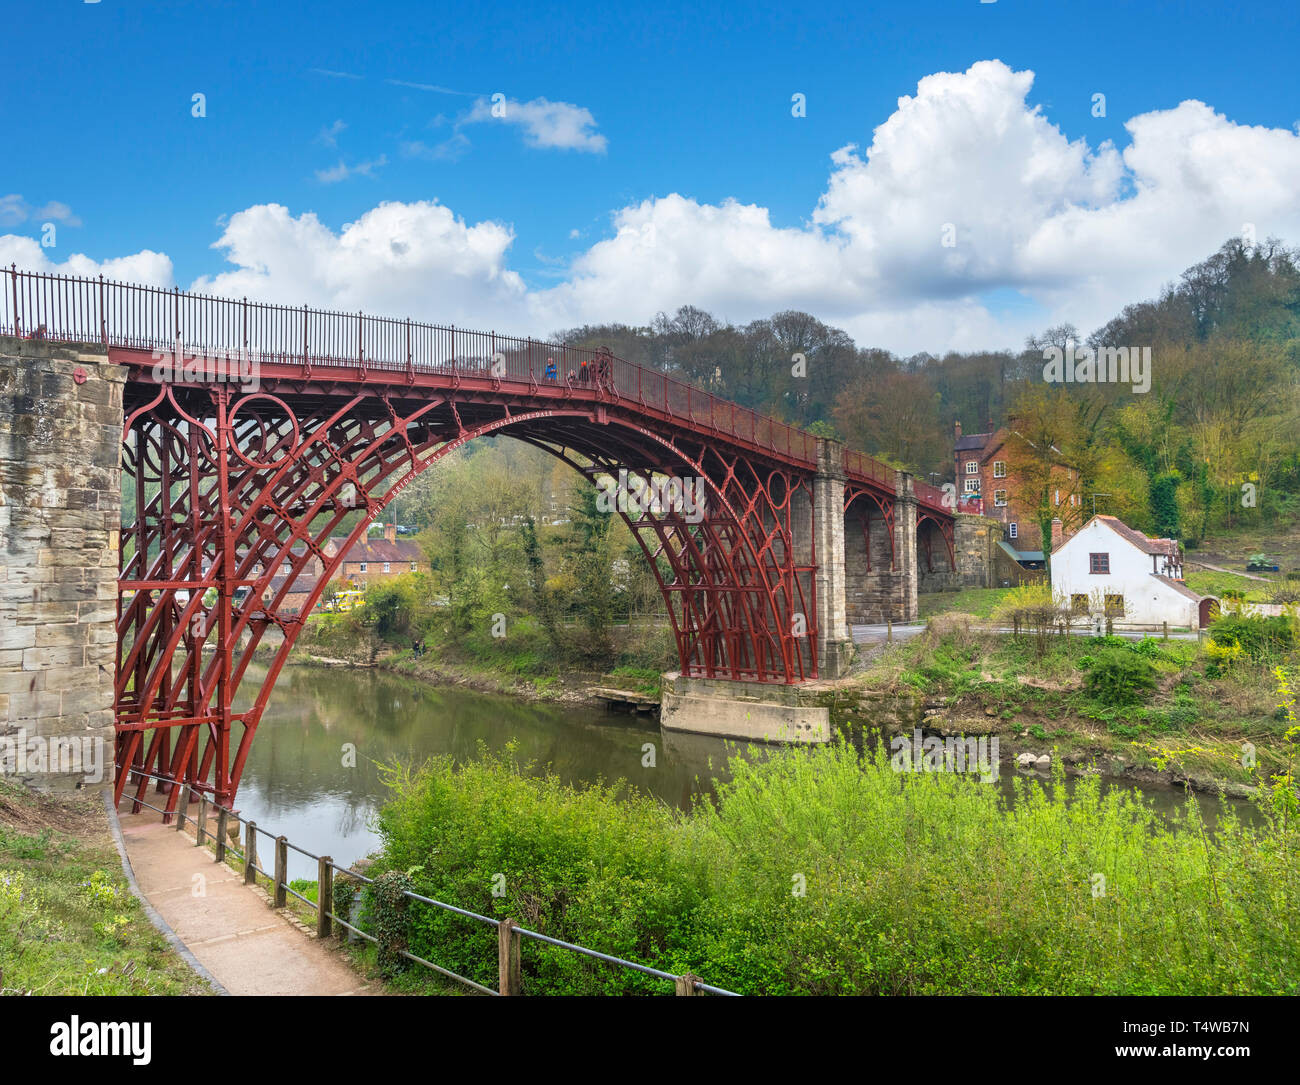 Gorge d'Ironbridge, UK. Historique du 18ème siècle le pont de fer sur la rivière Severn, Ironbridge, Coalbrookdale, Shropshire, England, UK Banque D'Images